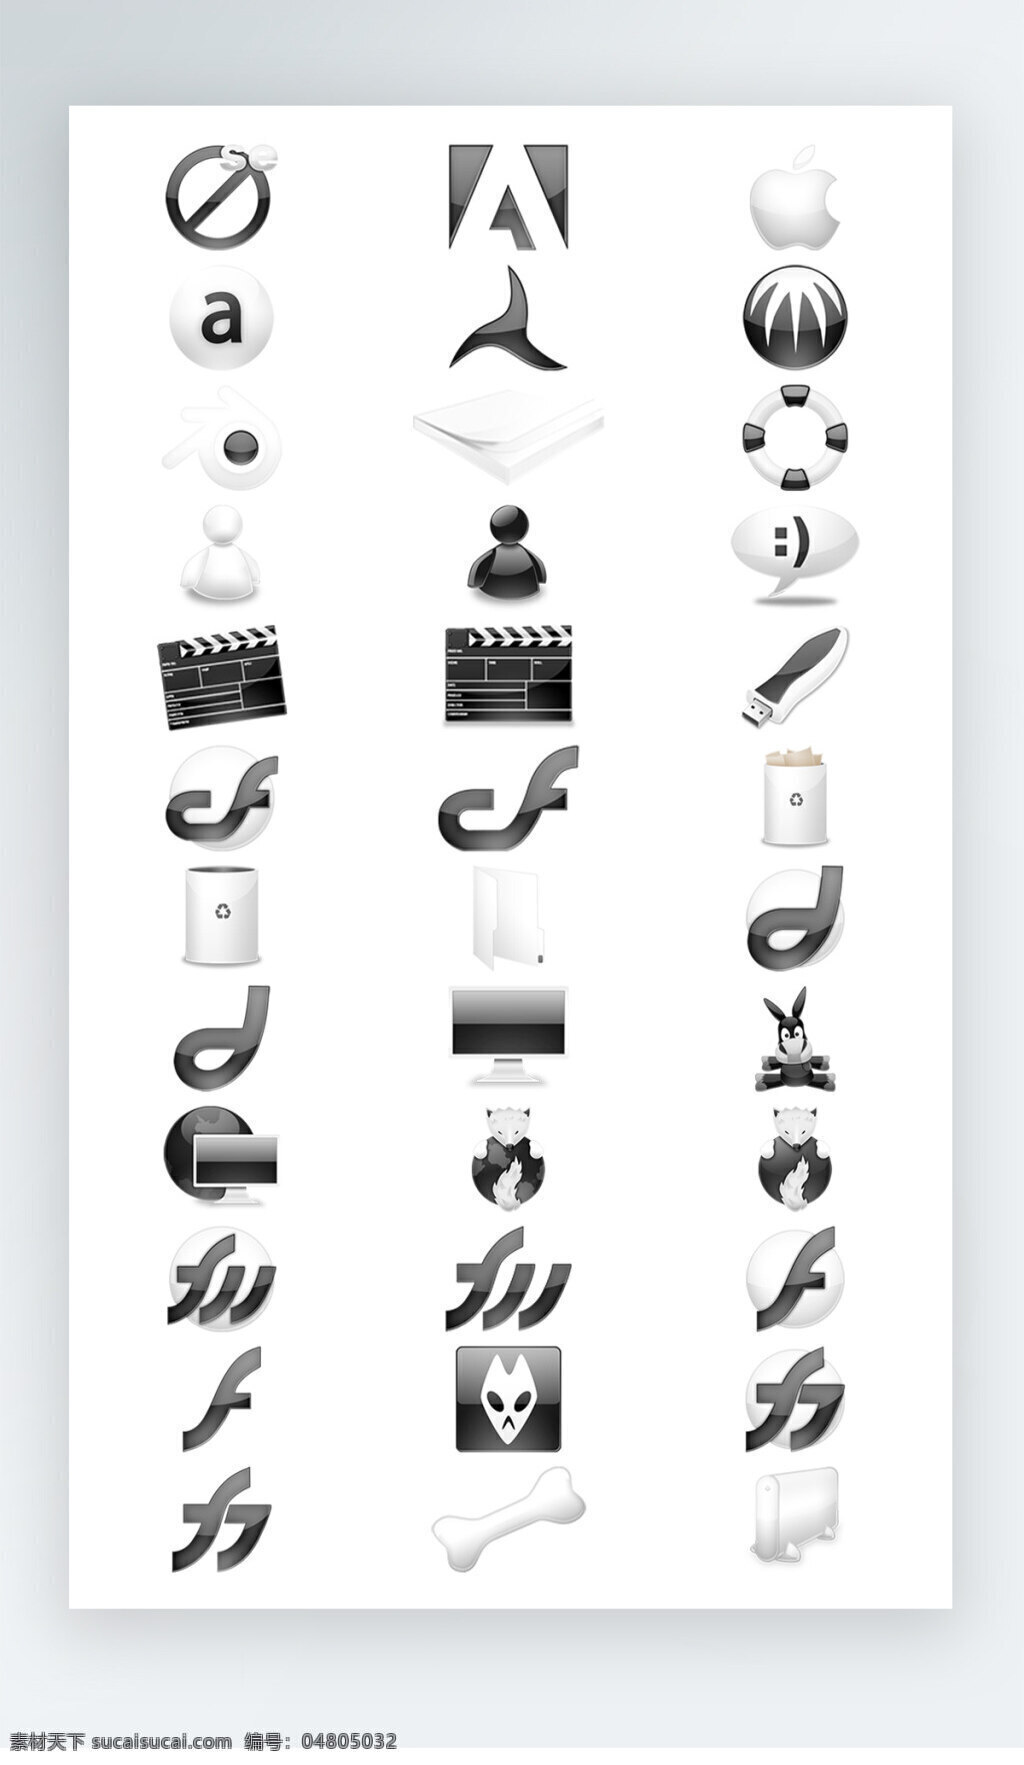 软件 工具 图标 黑白 写实 icon 软件工具图标 黑白写实图标